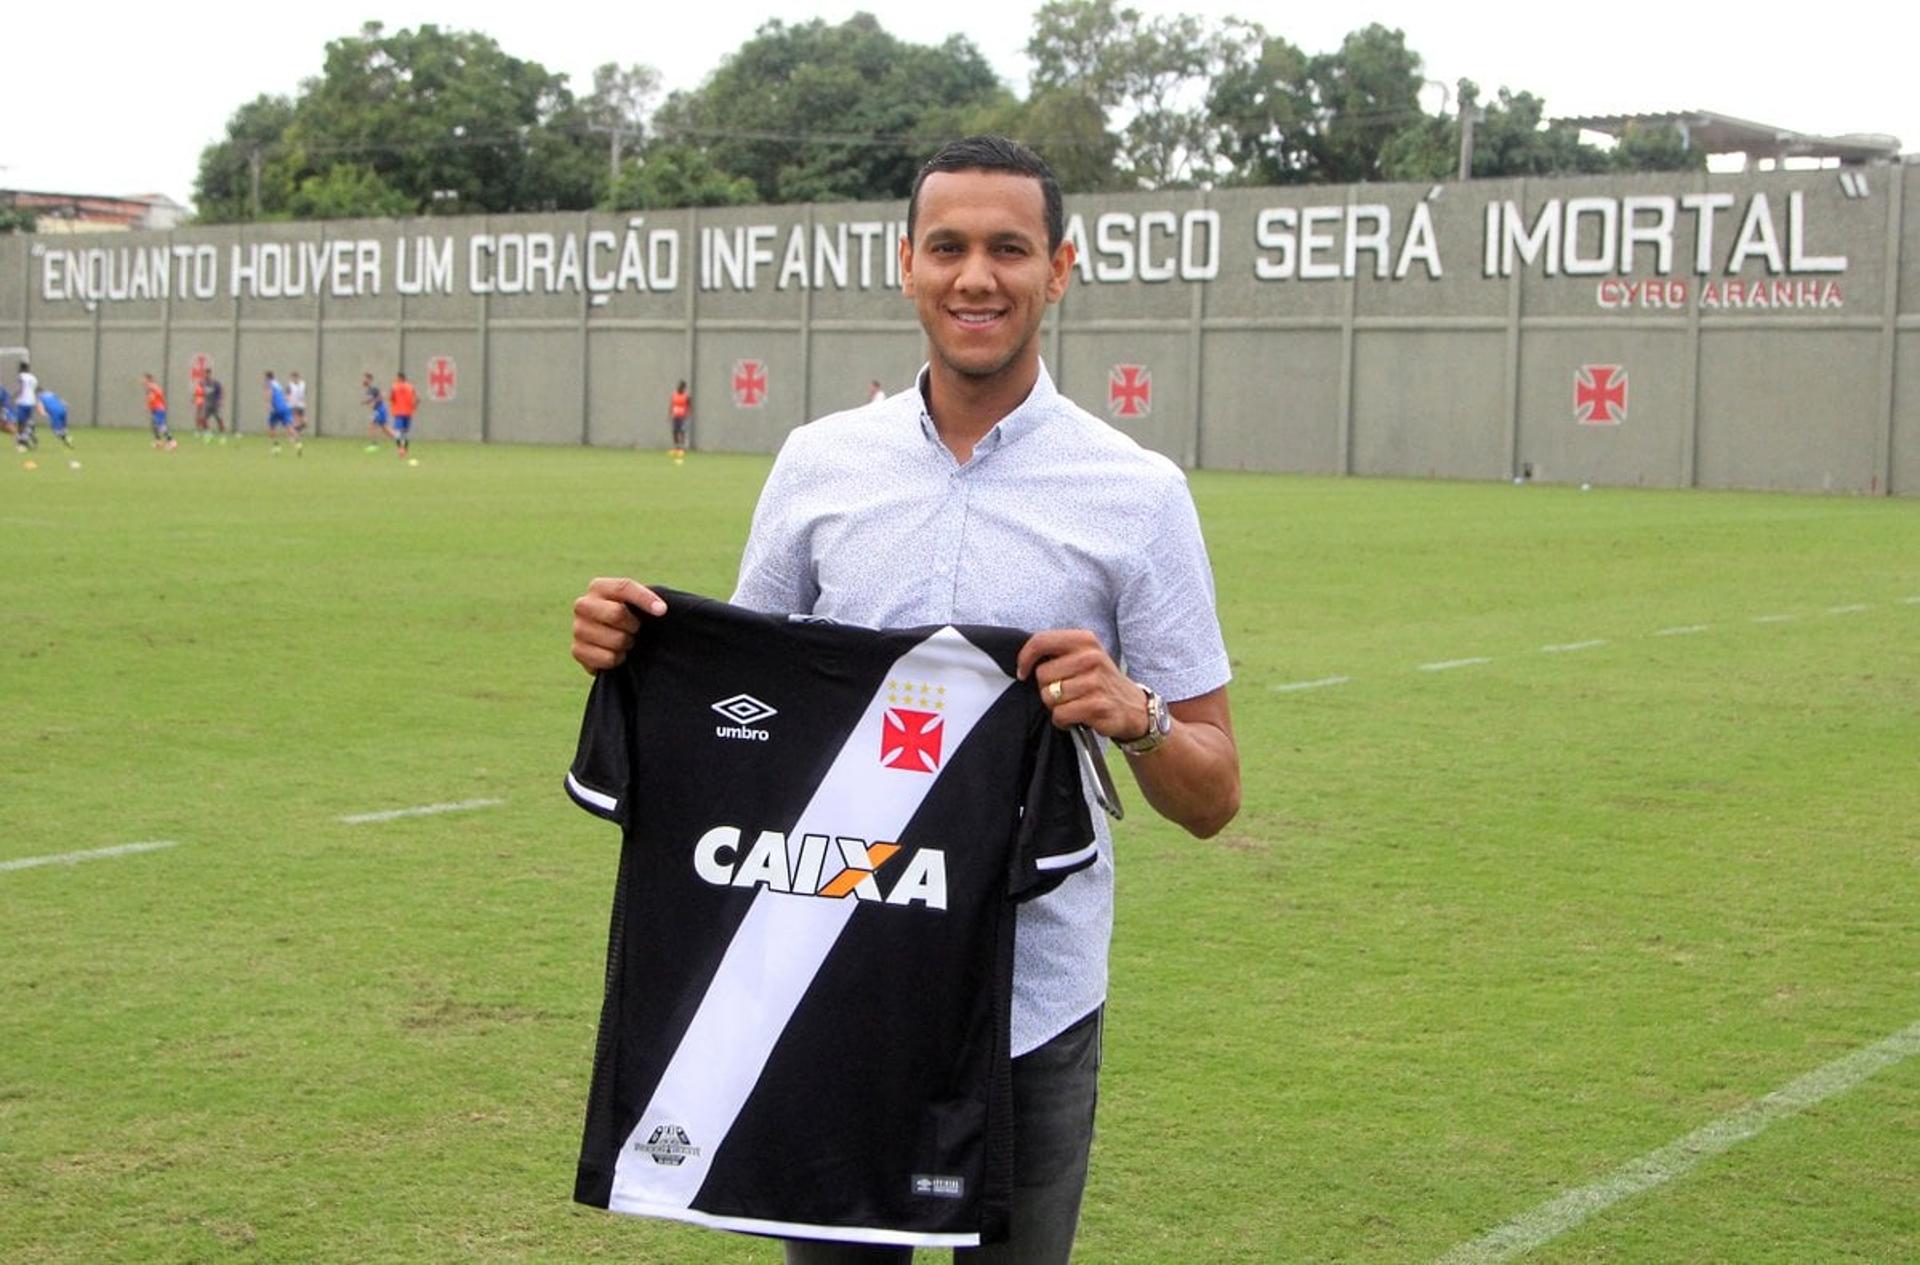 Souza posa com a camisa do Vasco em São Januário. Queria ele de volta, torcedor?